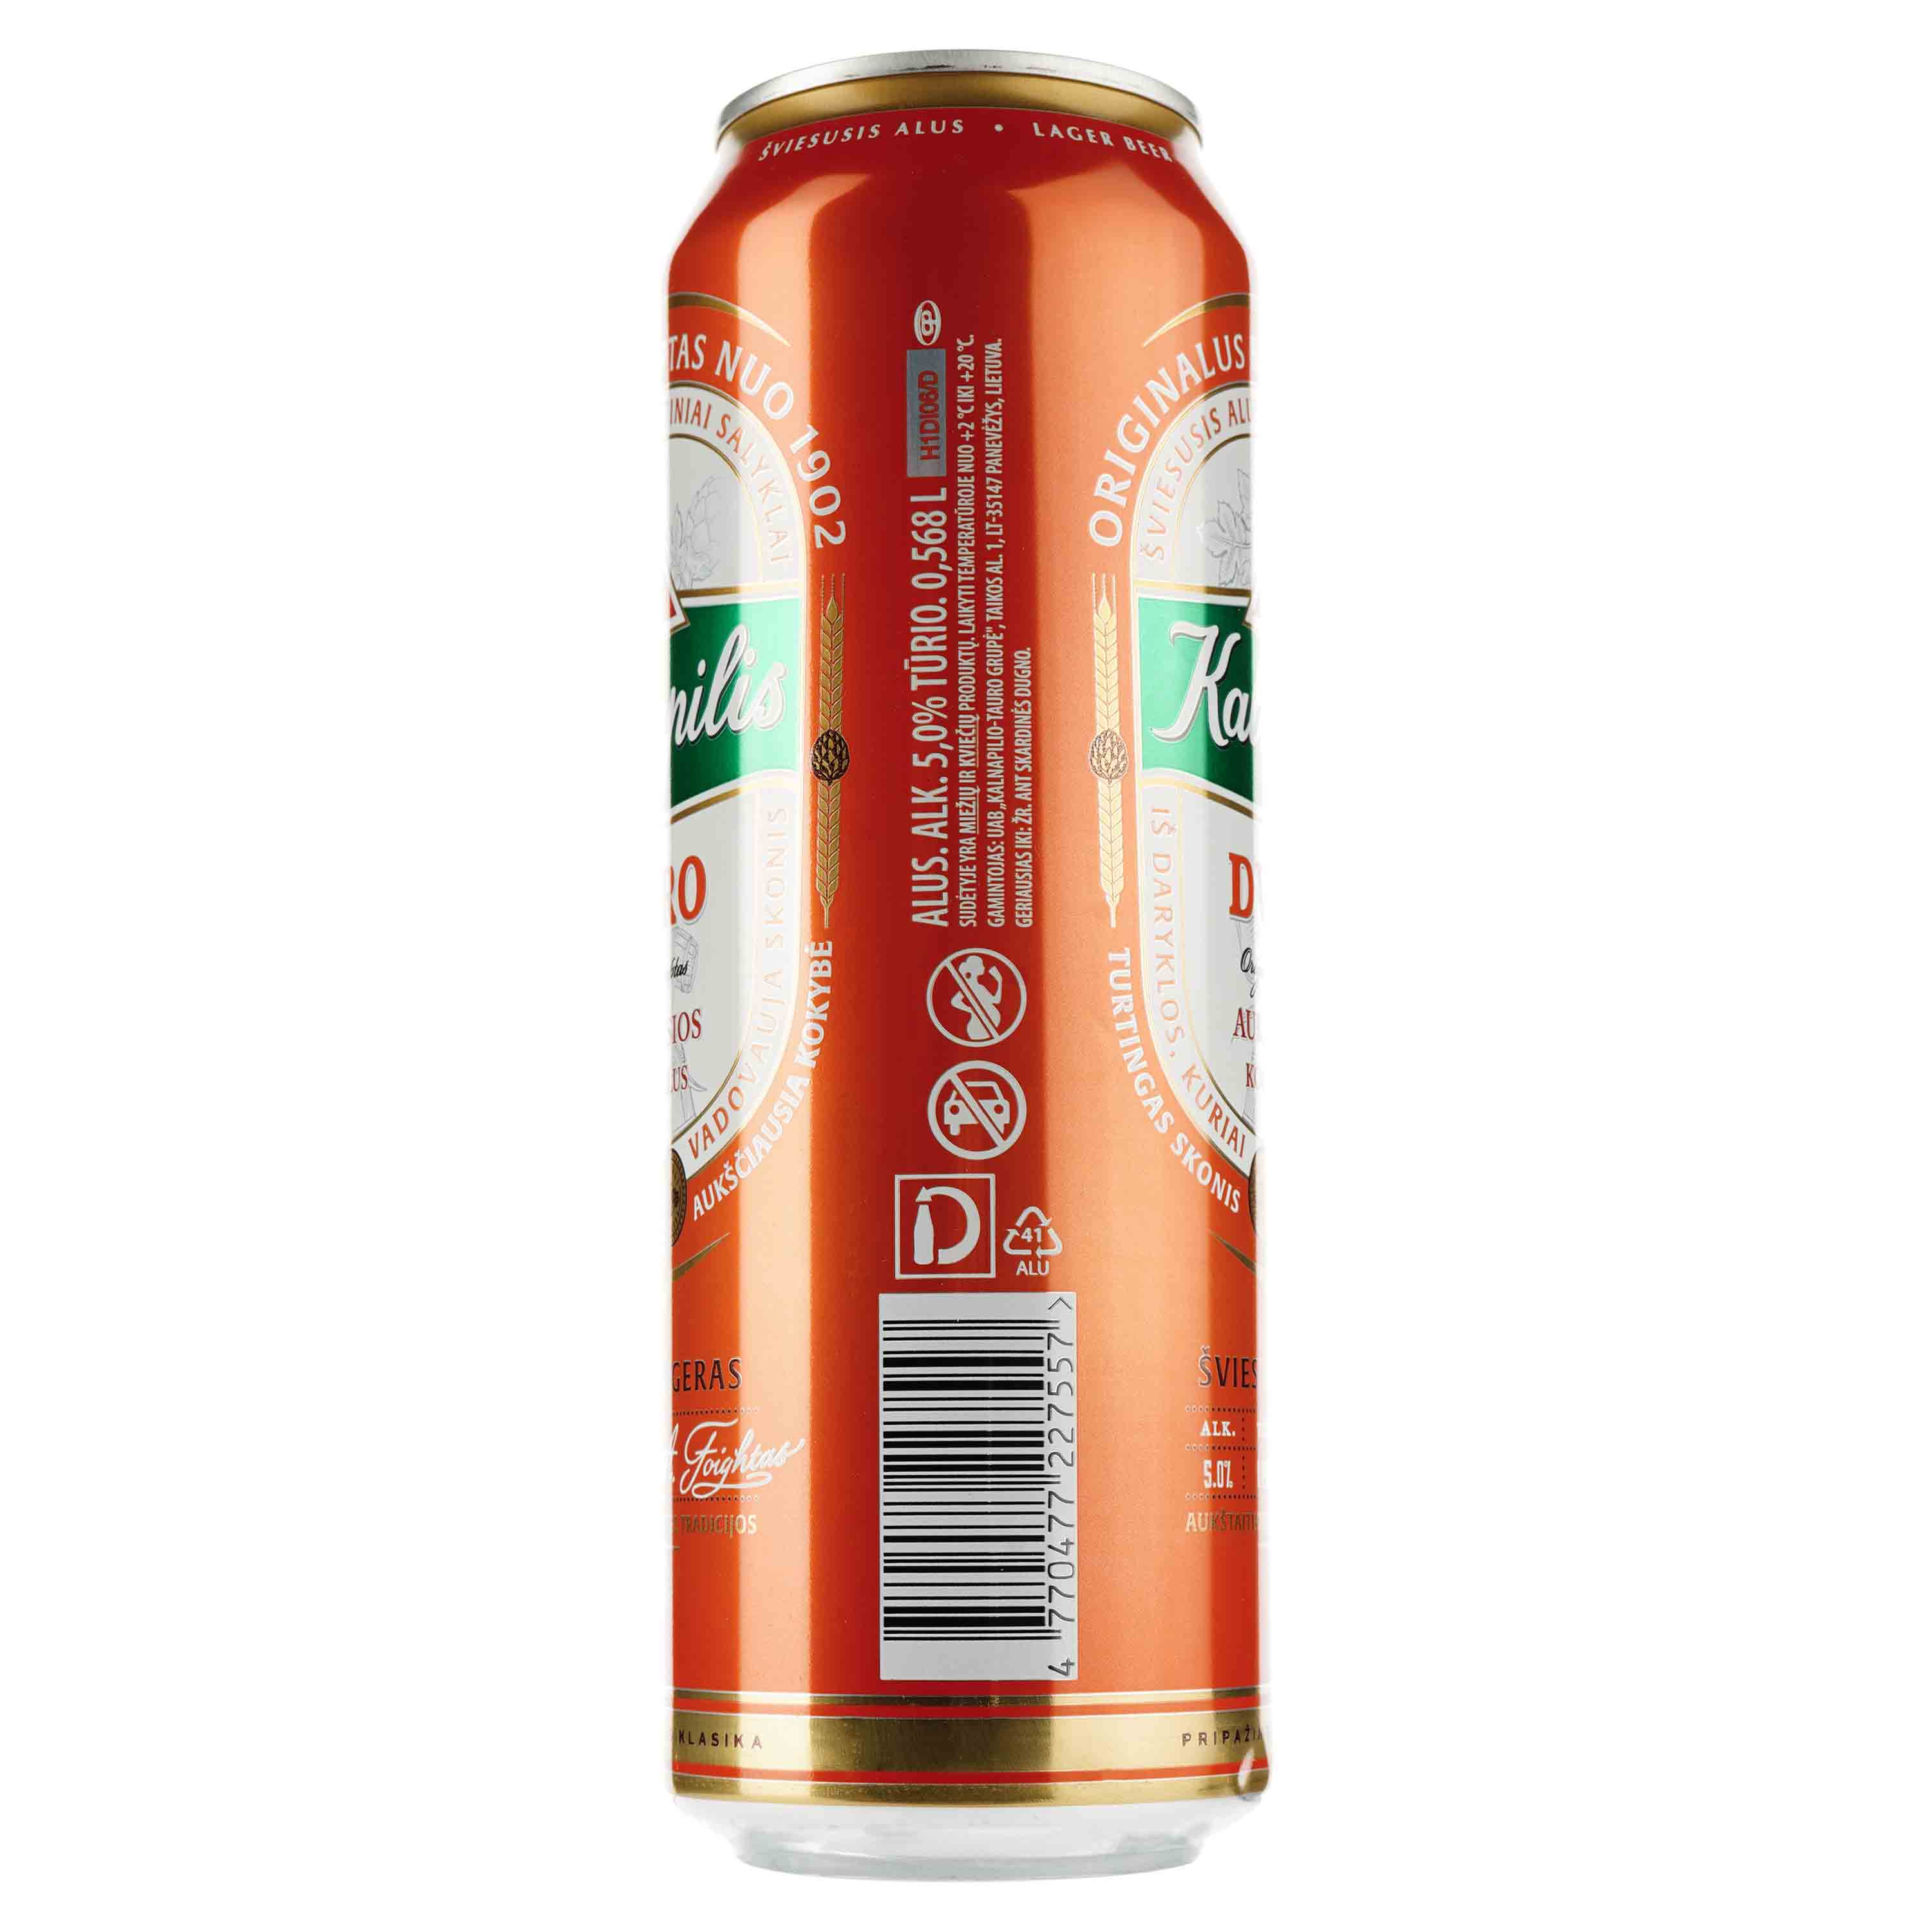 Пиво Kalnapilis Dvaro, светлое, фильтрованное, 5%, ж/б, 0,568 л - фото 2